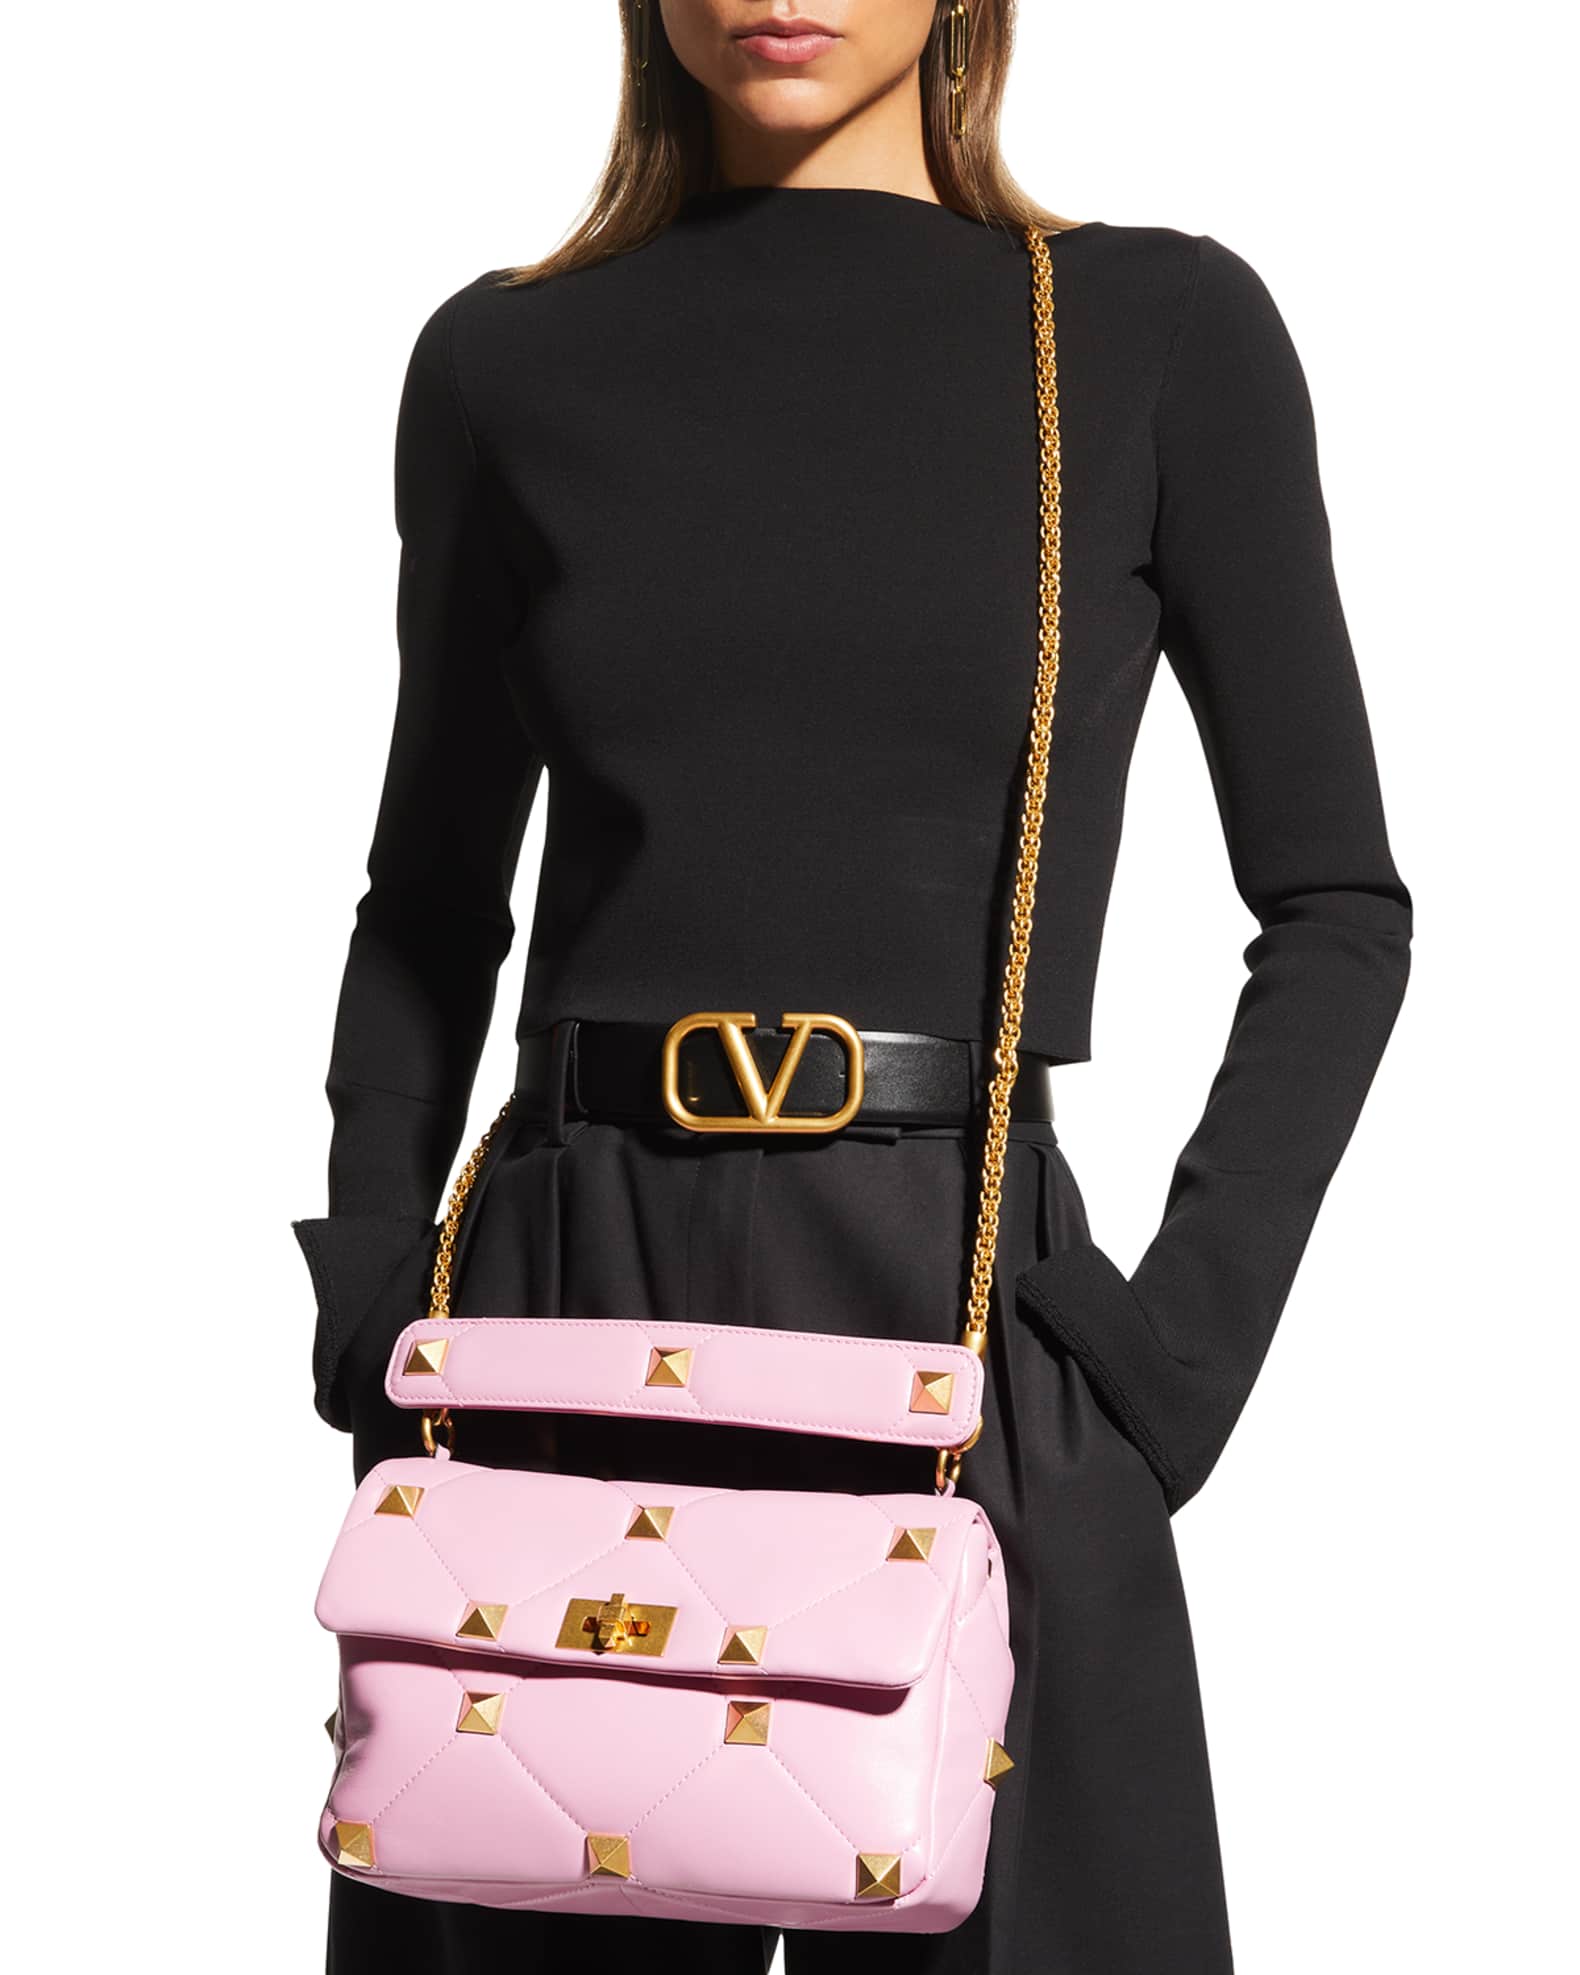 Valentino Garavani Roman Stud Large Quilted Leather Shoulder Bag ...